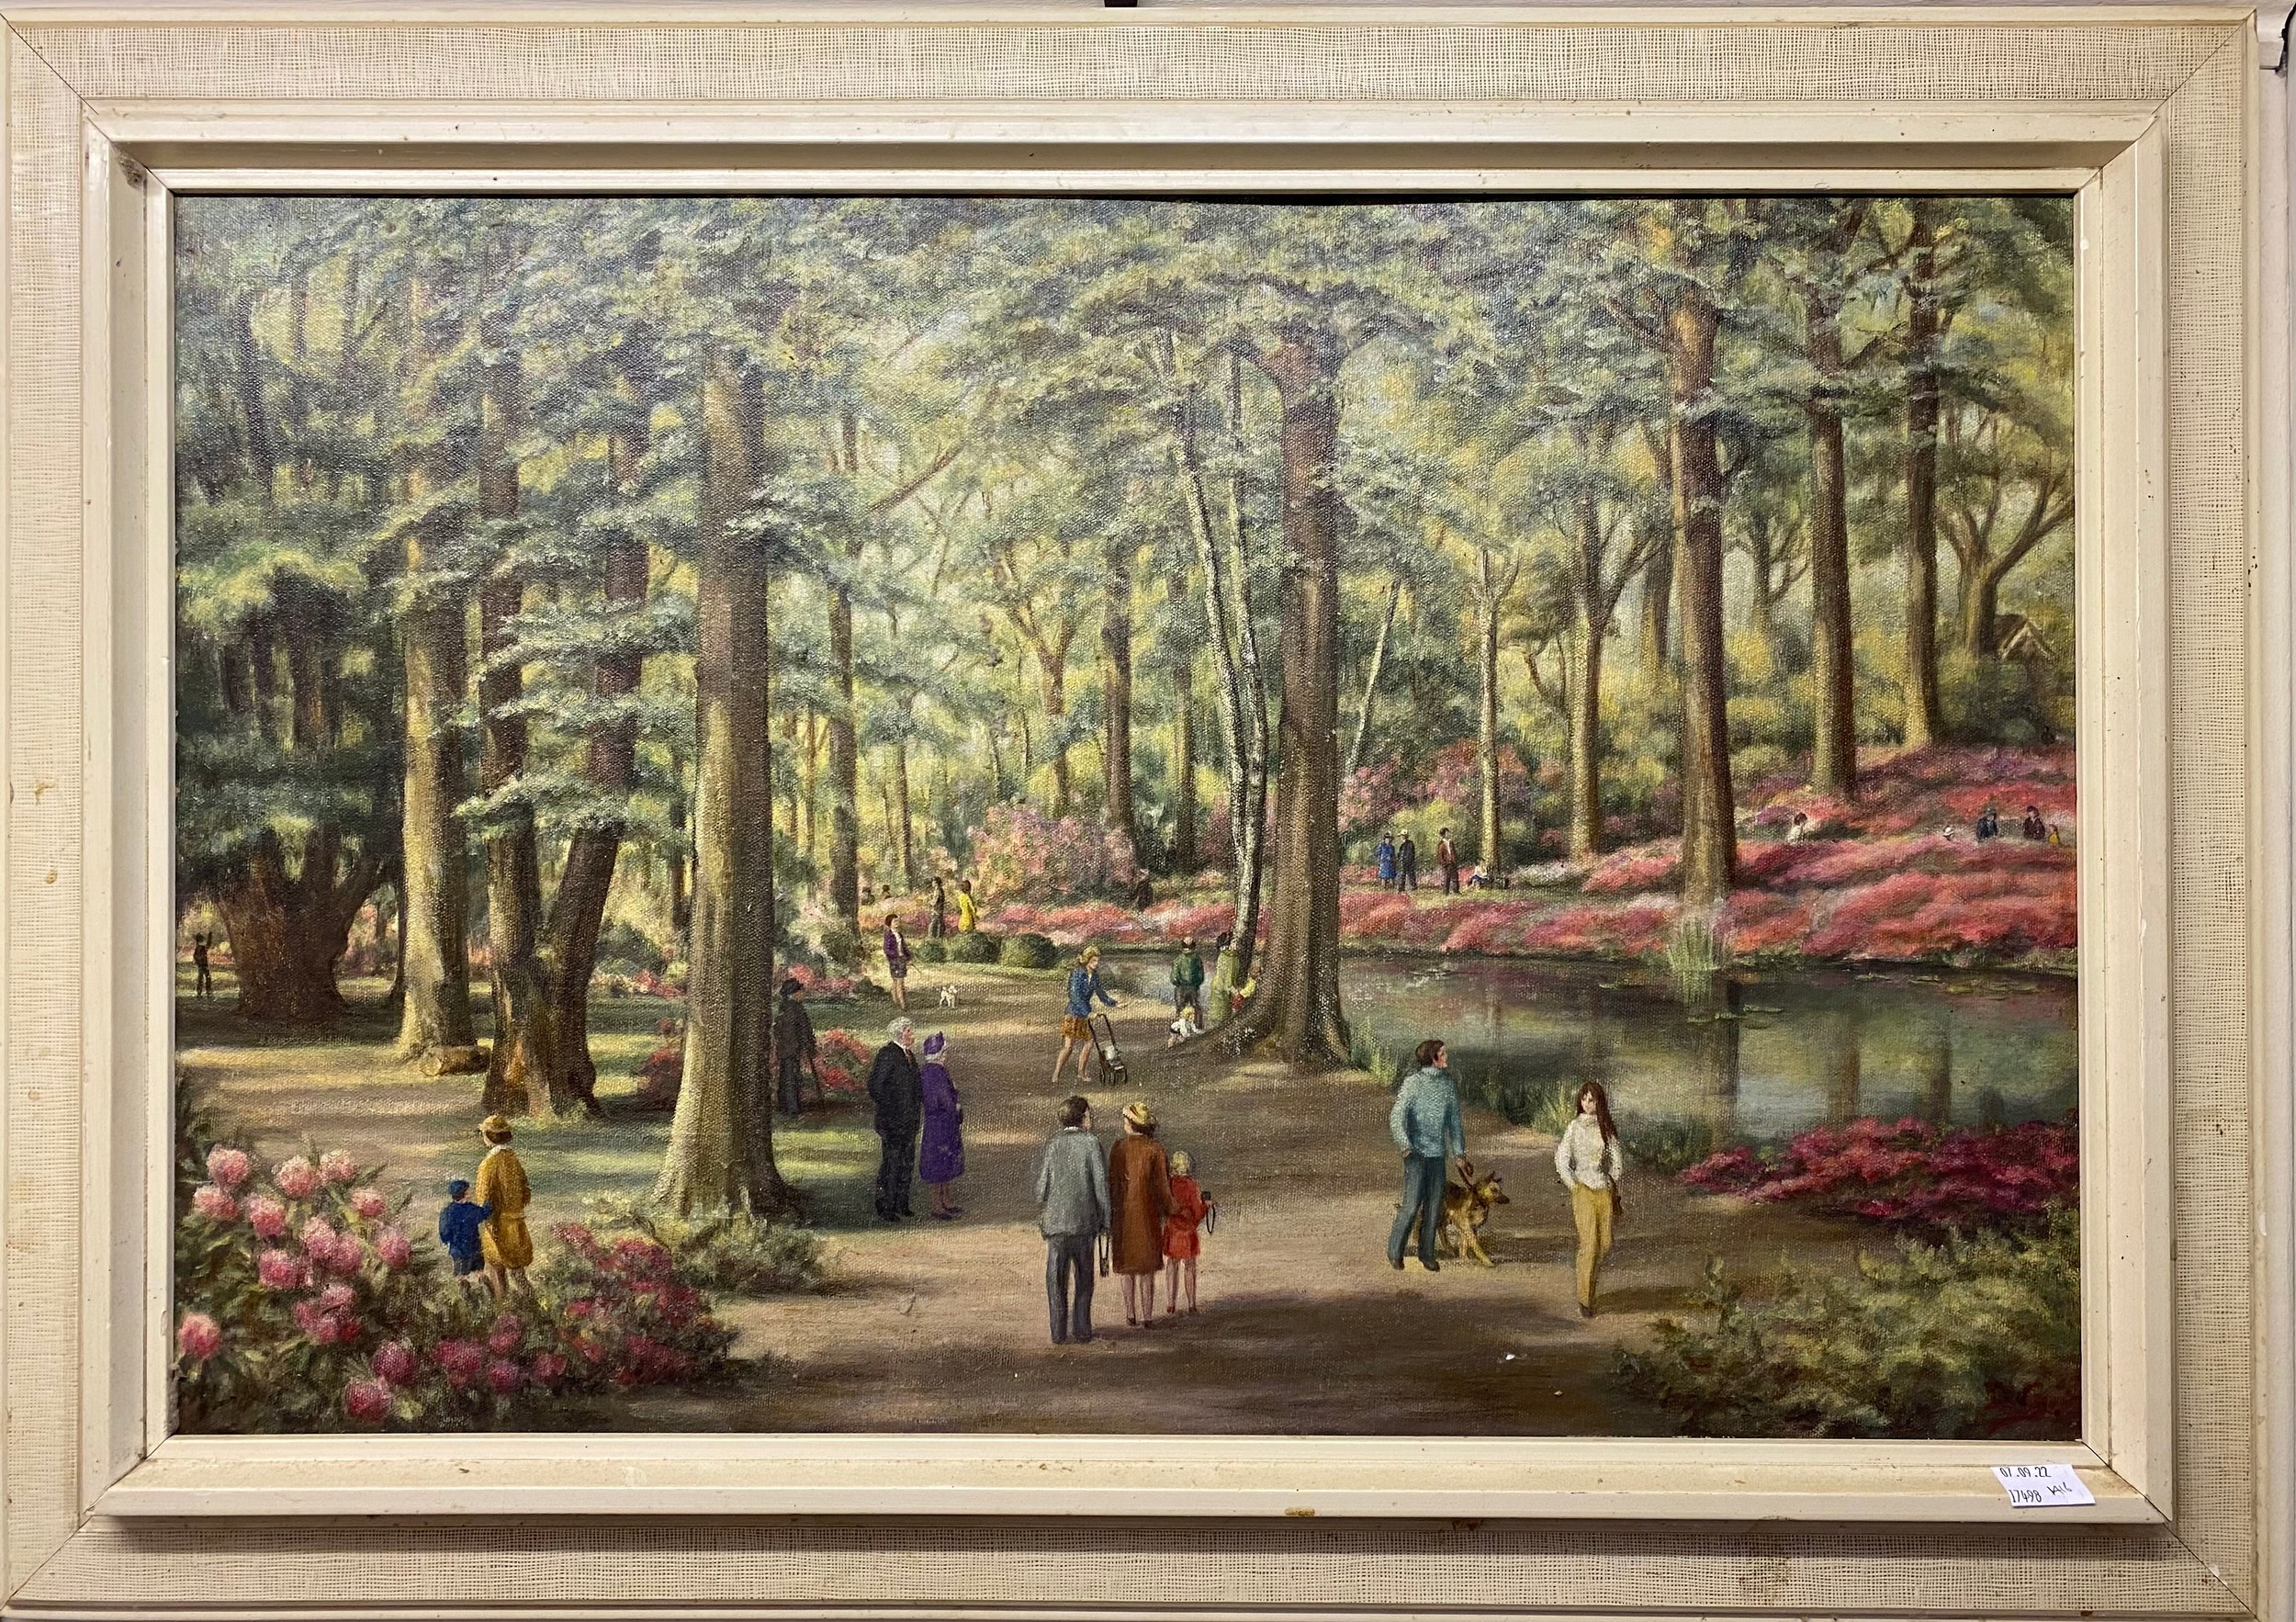 Doris Griggs. 'Isabella Plantation,' numerous figures in a wooden river landscape, signed 'DG,'